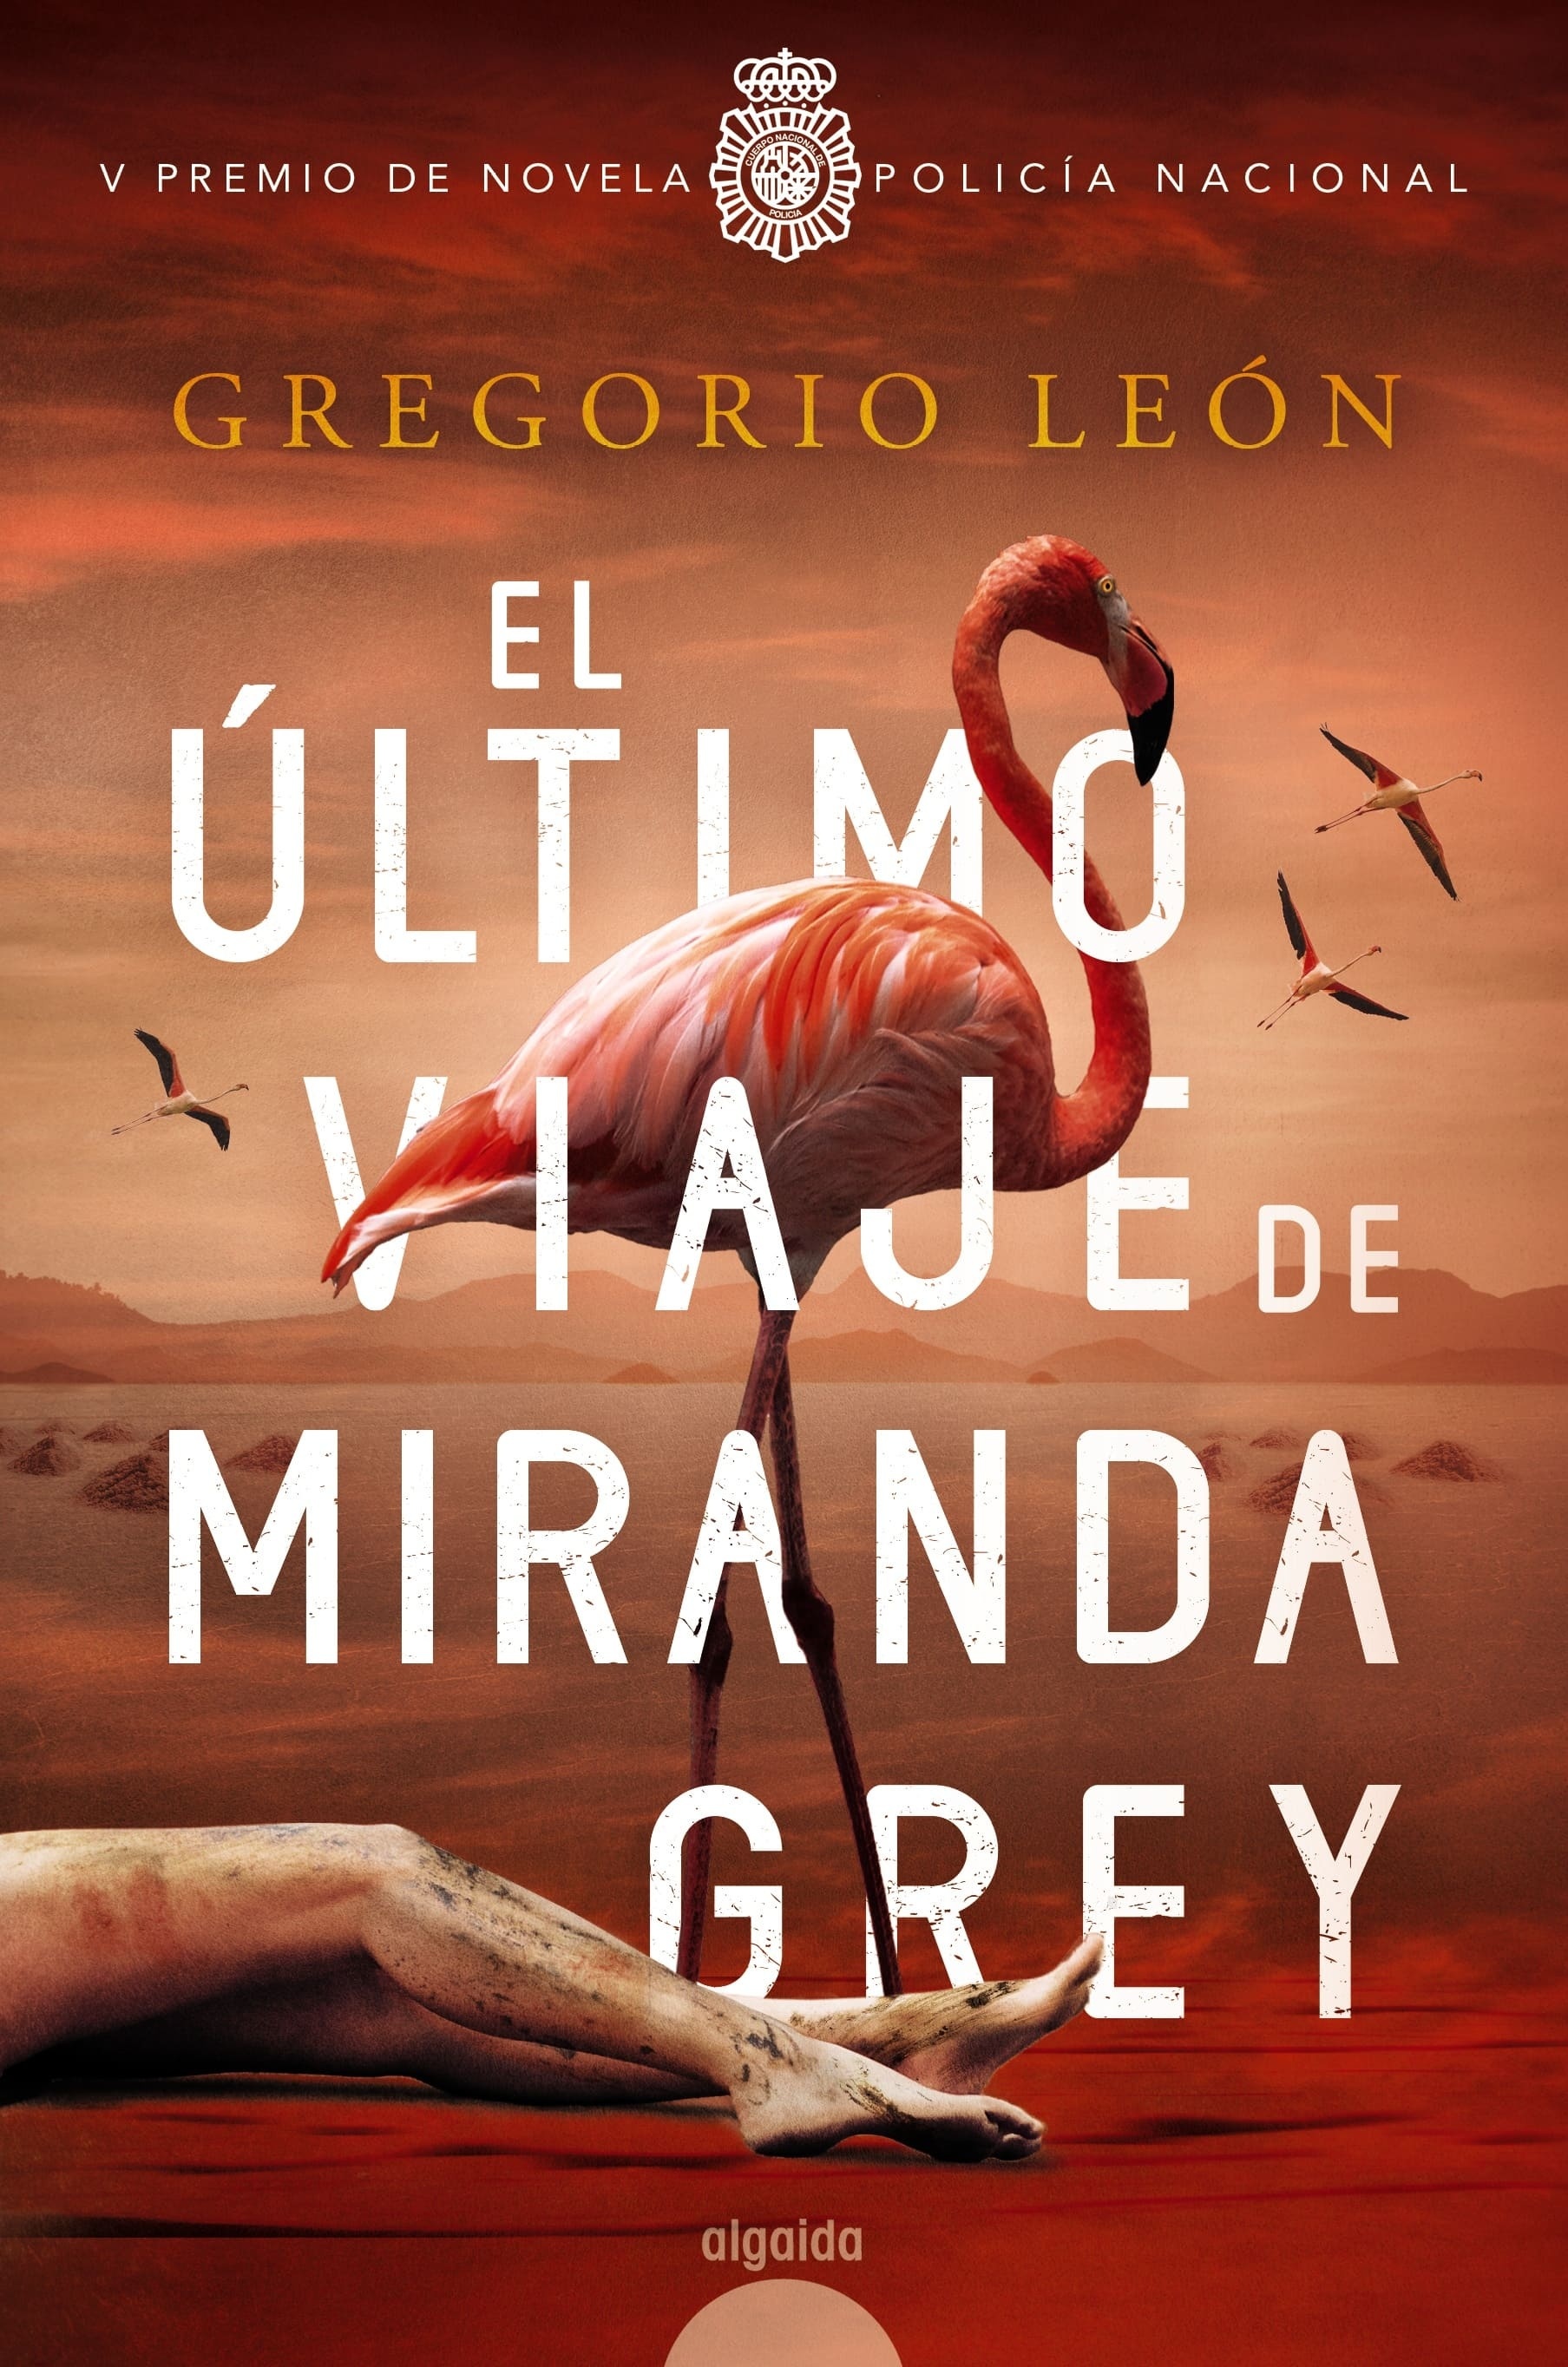 Ultimo viaje de Miranda Grey, El "V Premio de novela Policía Nacional"